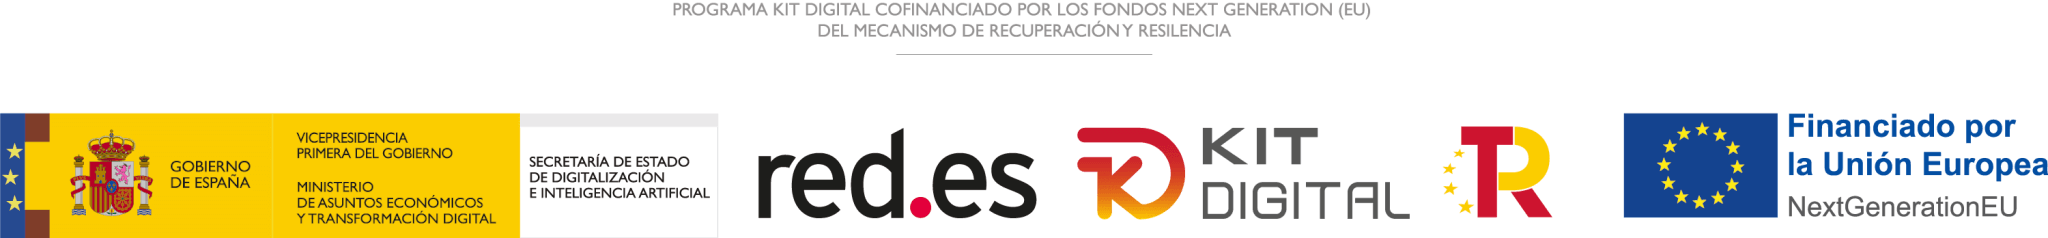 Logo_institucional_digitalizadores_KitDigital